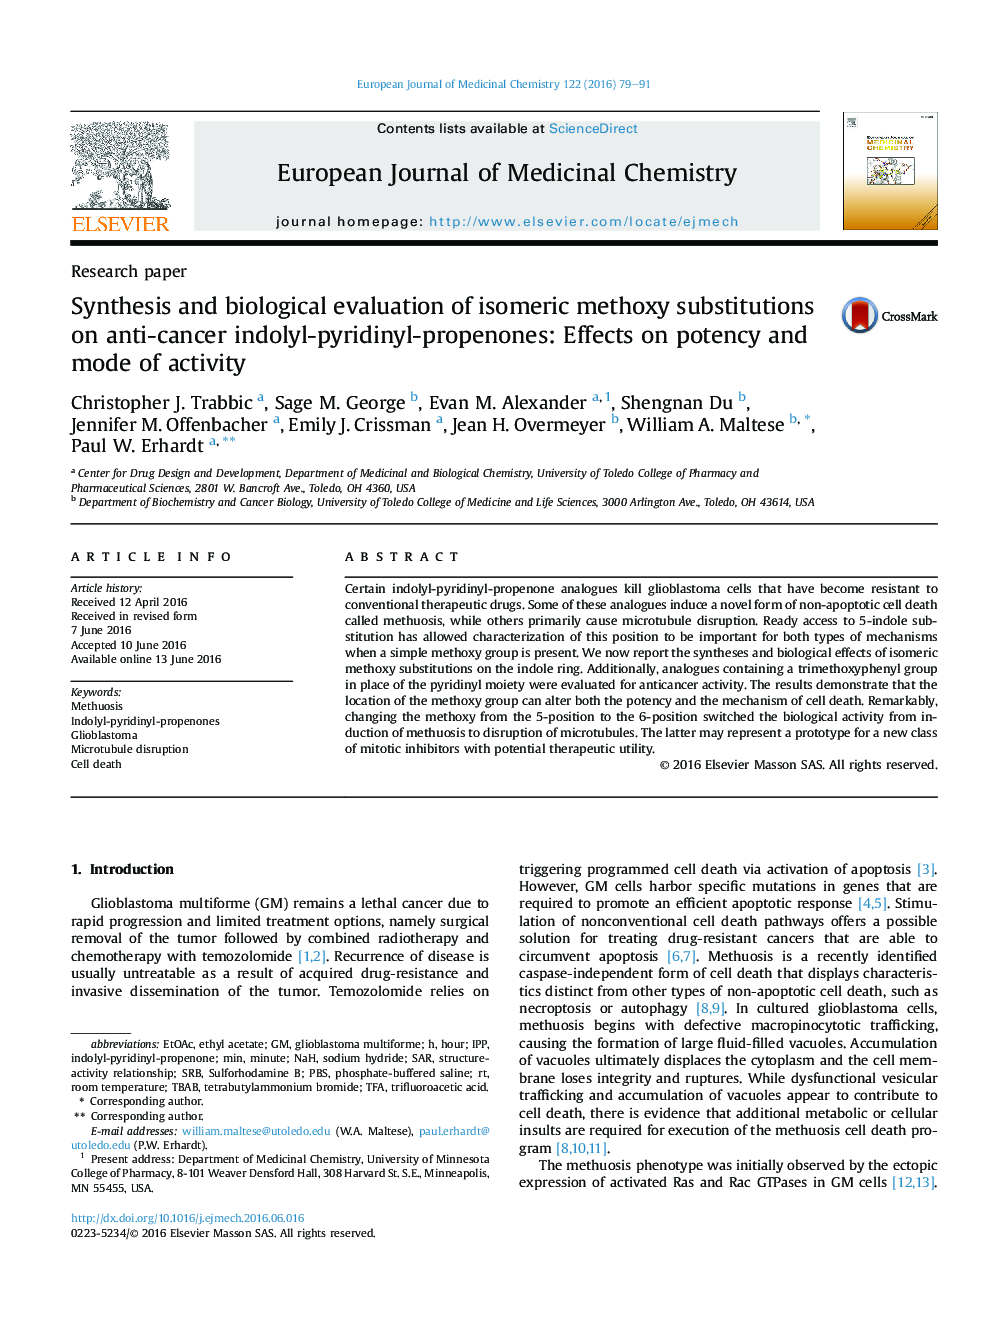 سنتز و ارزیابی بیولوژیکی جایگزینی متوسلی ایزومر در اندولیل پیلیدینیل پروپنونهای ضد سرطان: اثرات روی قدرت و حالت فعالیت 